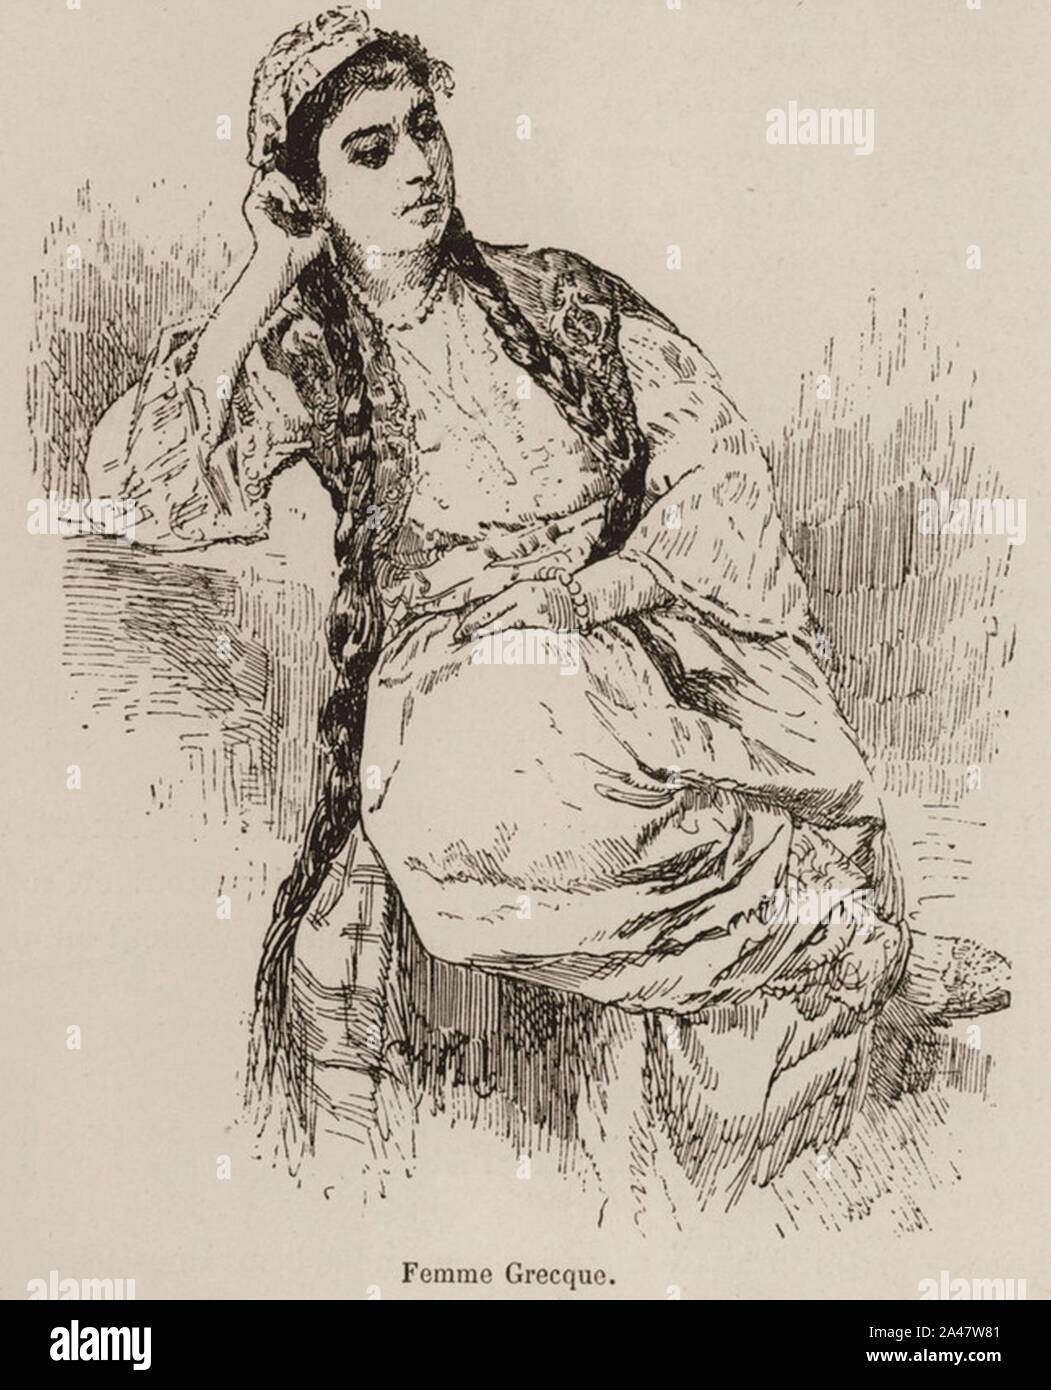 Femme Grecque - De Amicis Edmondo - 1883. Stock Photo